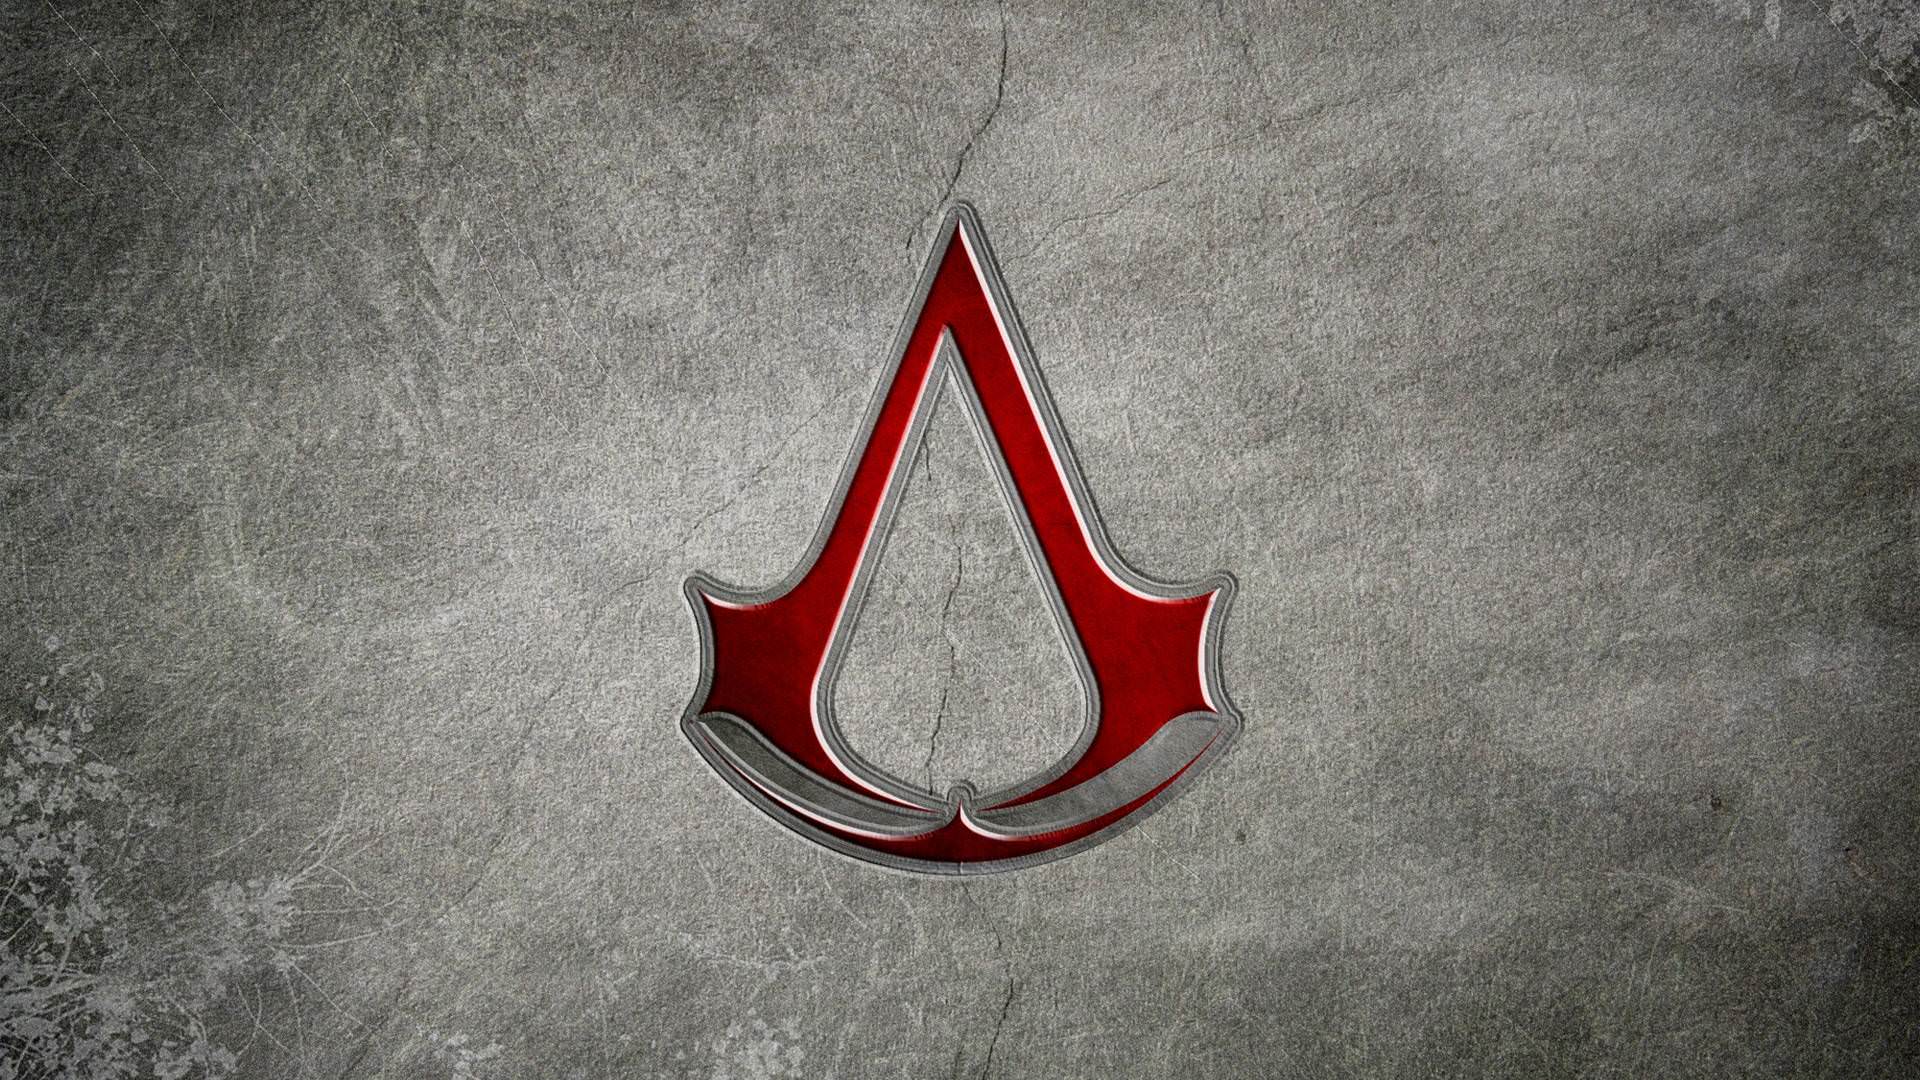 Hình nền HD 1920x1080 Assassins Creed Red Symbol.  Hình nền HD mới nhất